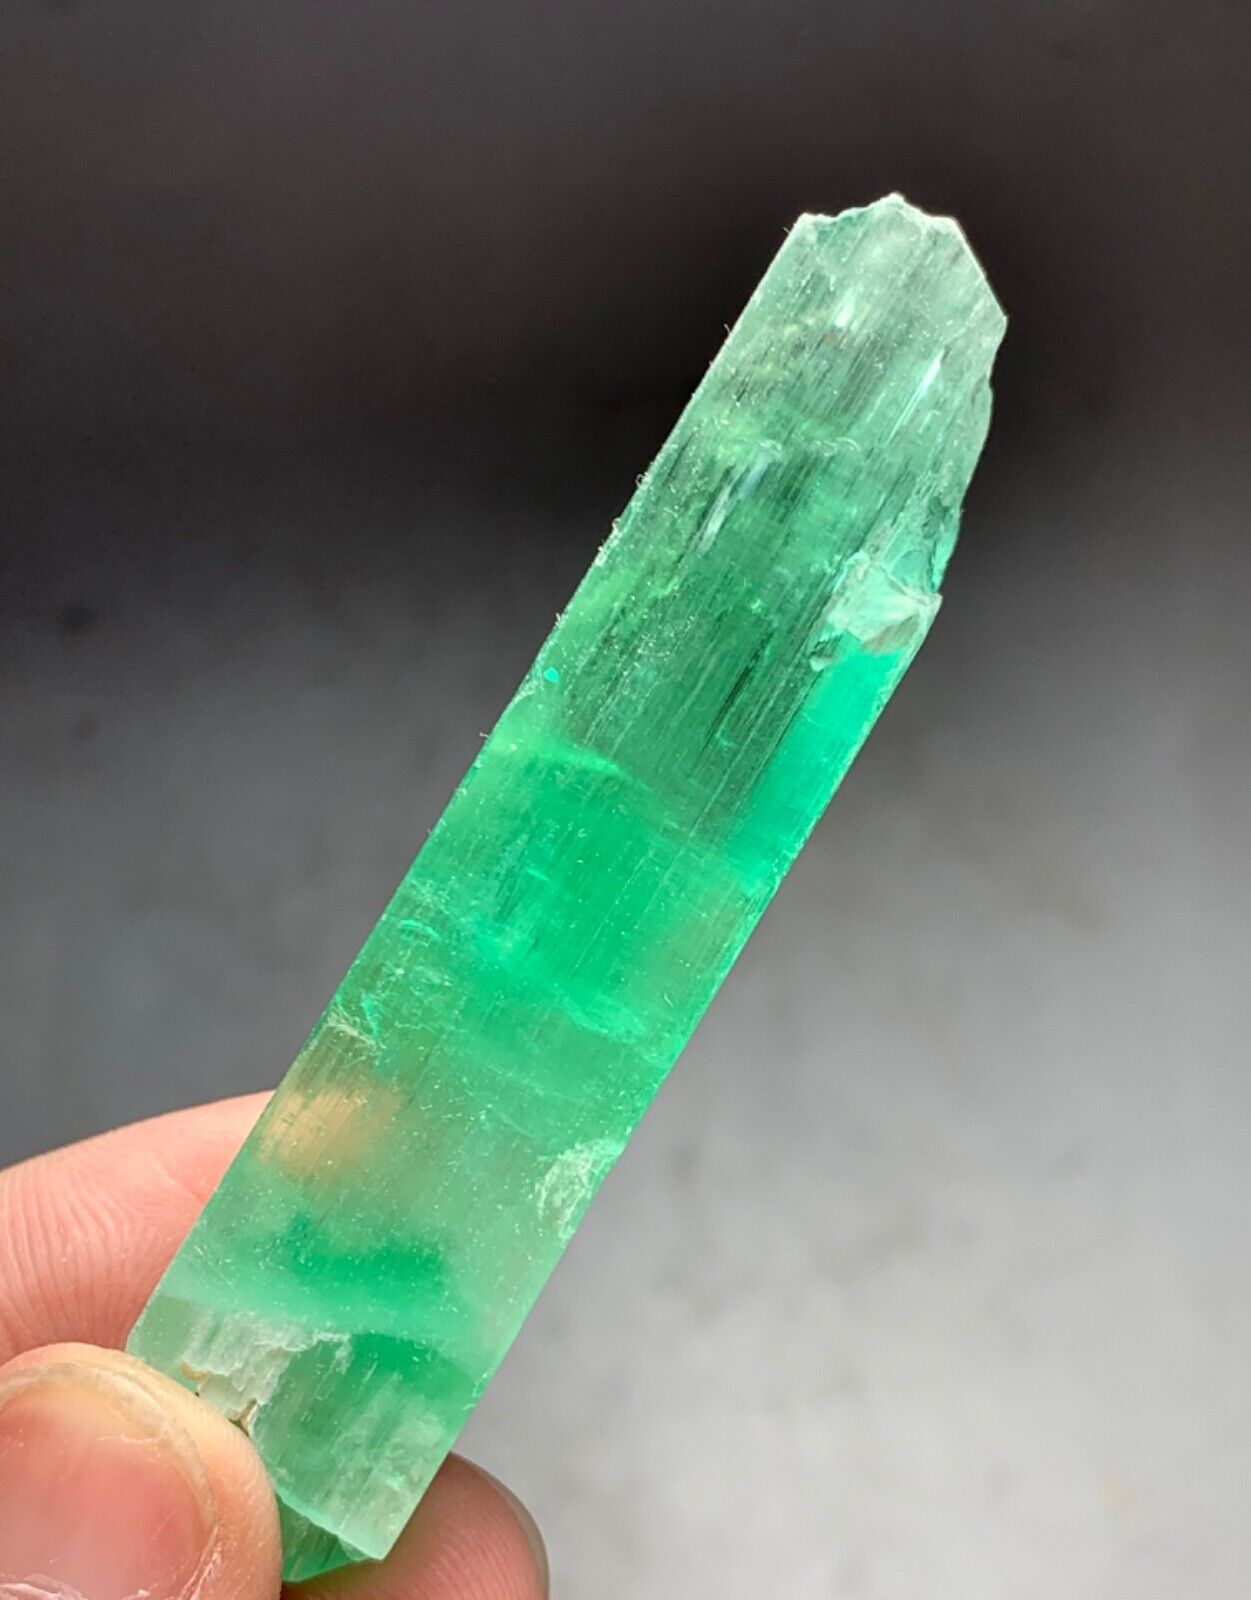 110 Carat Hiddenite Kunzite Crystal From Afghanistan